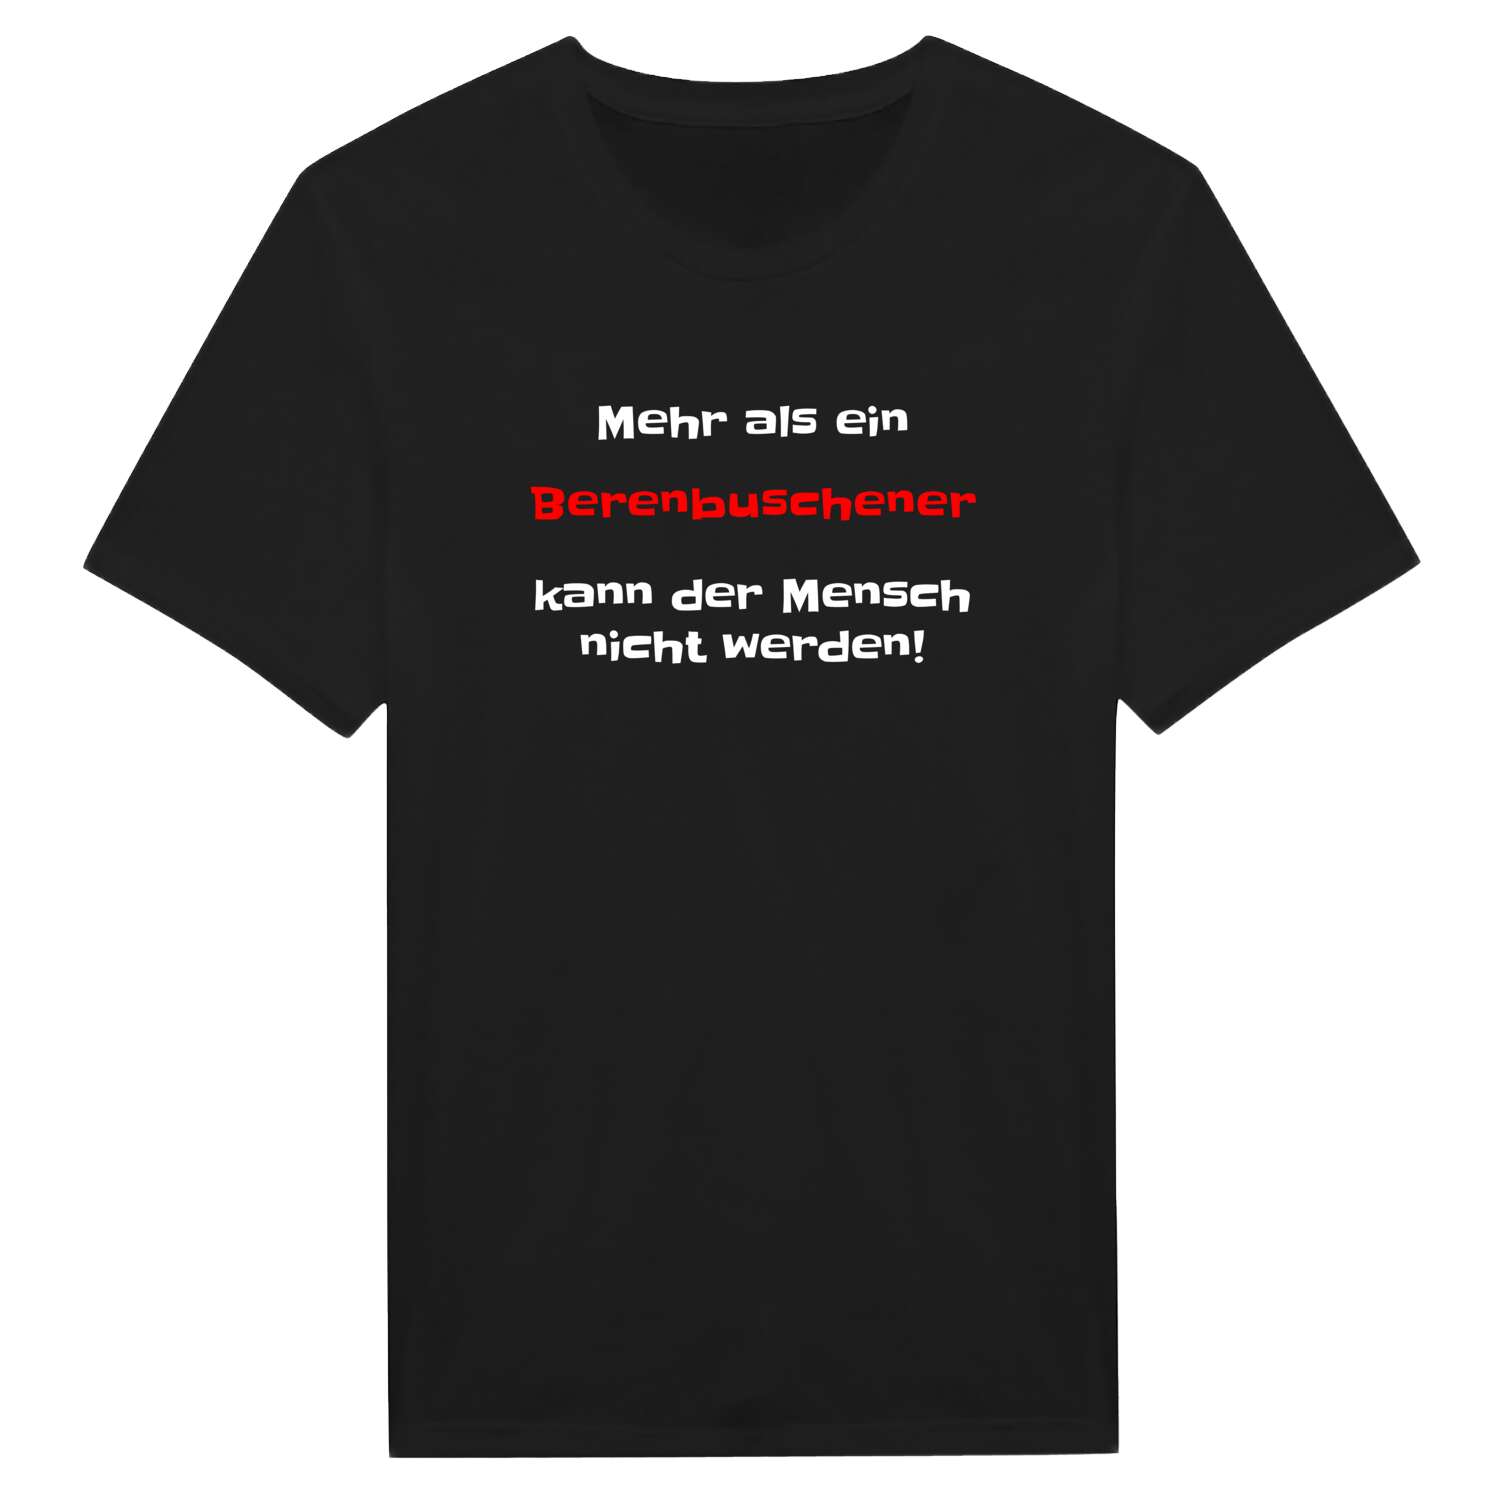 Berenbusch T-Shirt »Mehr als ein«